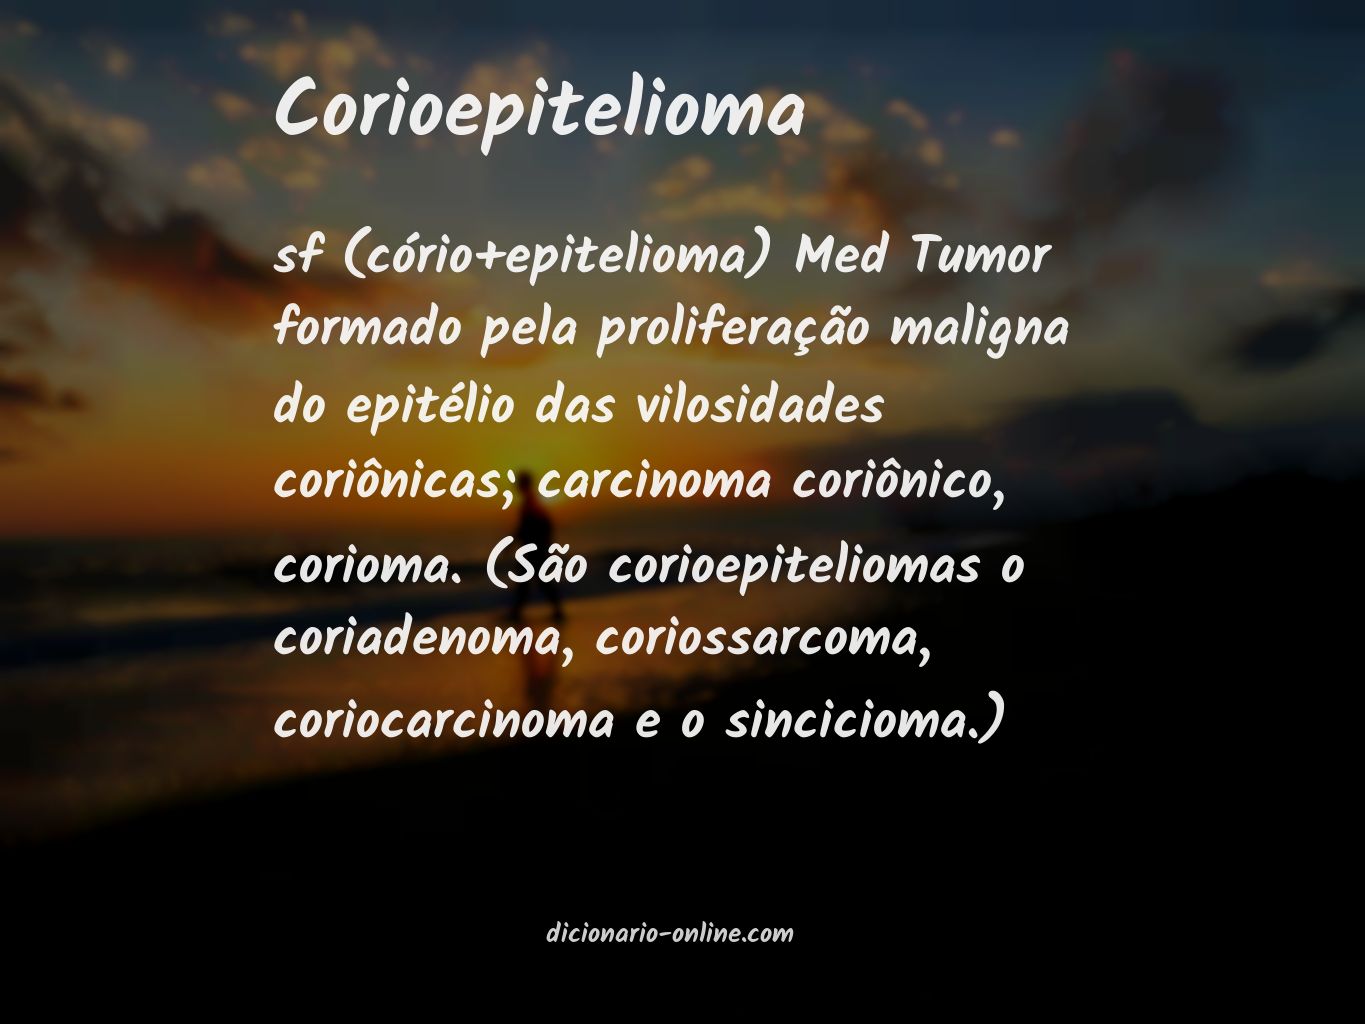 Significado de corioepitelioma